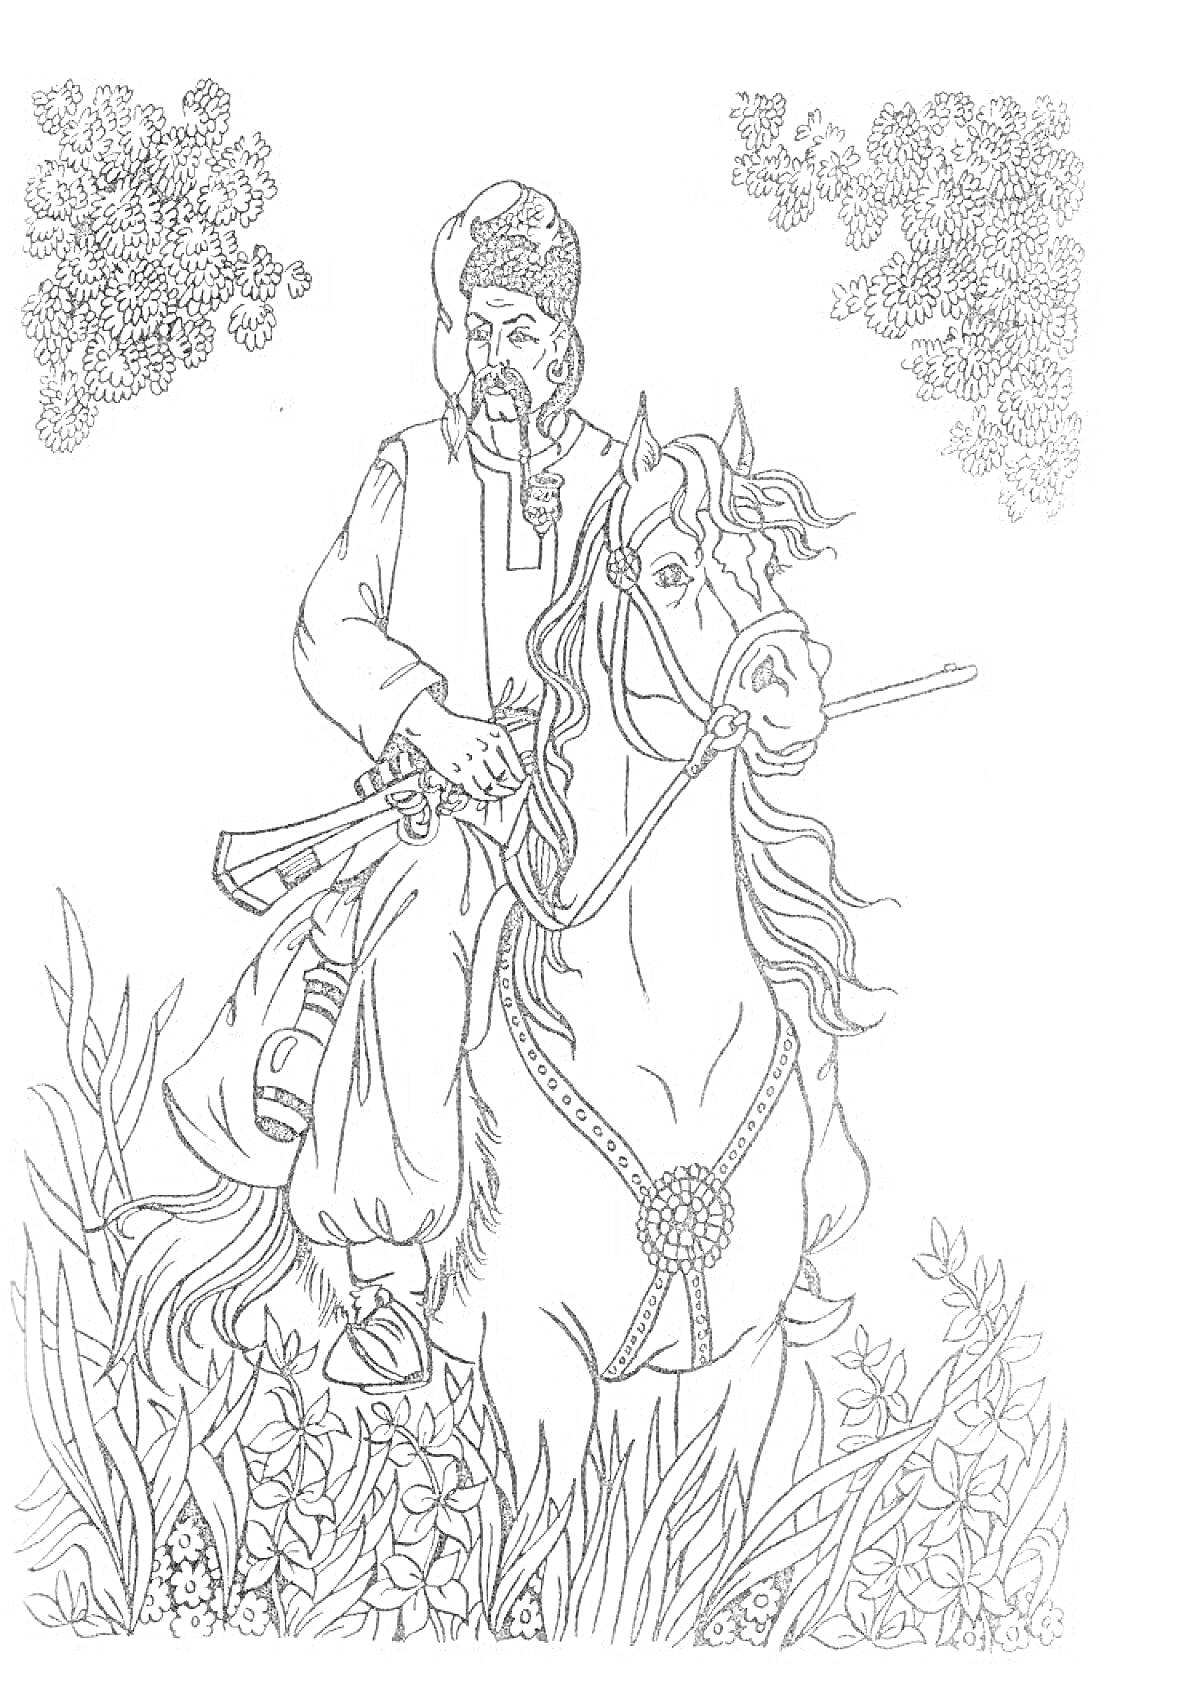 Раскраска Тарас Бульба на лошади среди растительности и деревьев